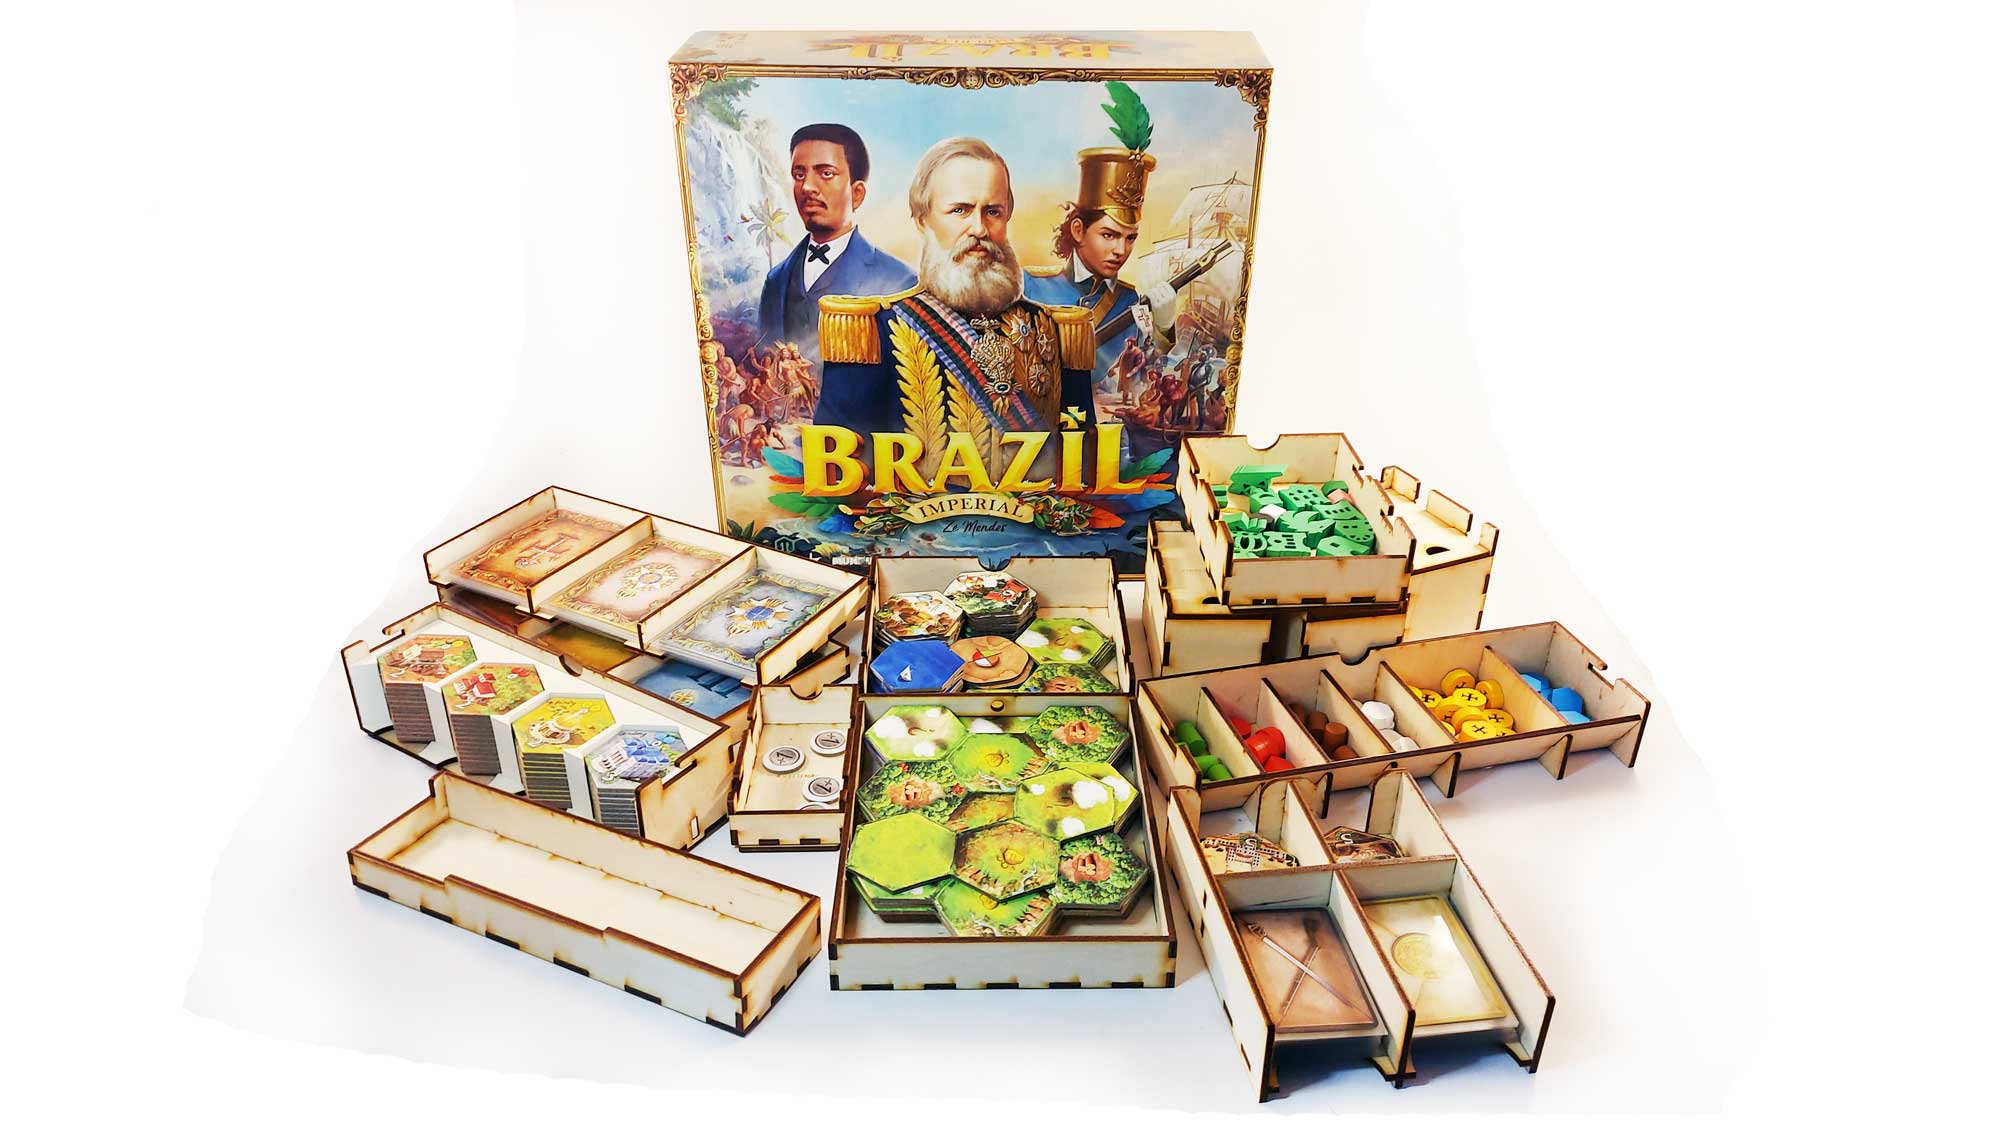 Brazil Imperial Board Game